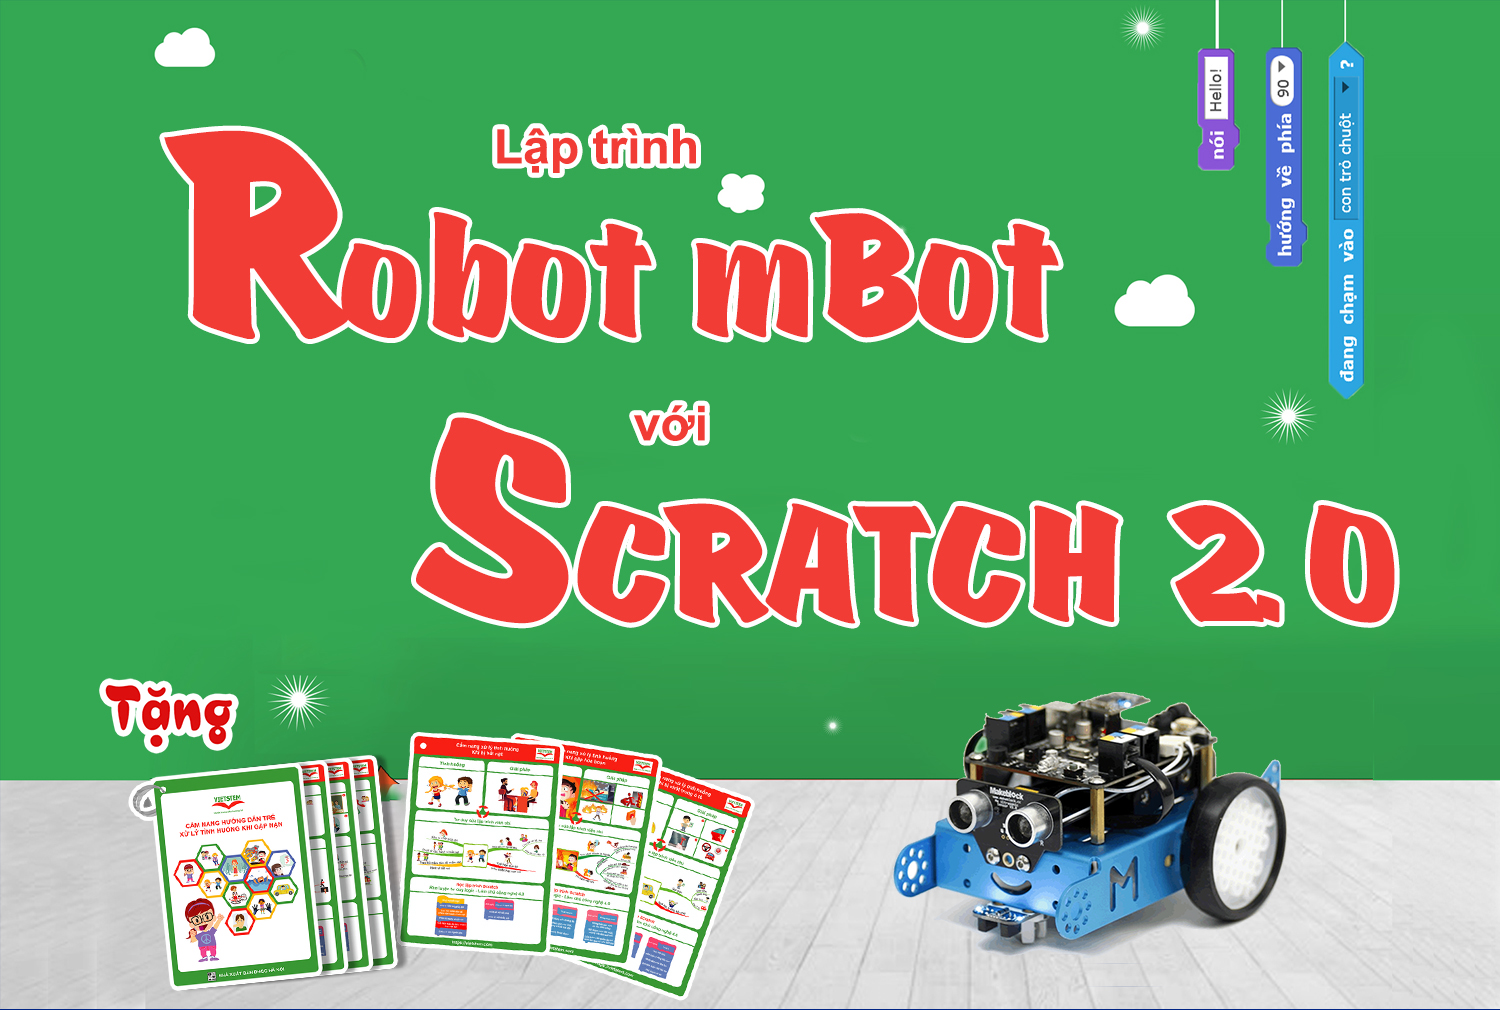 Lập trình ĐK Robot với Scratch 2.0